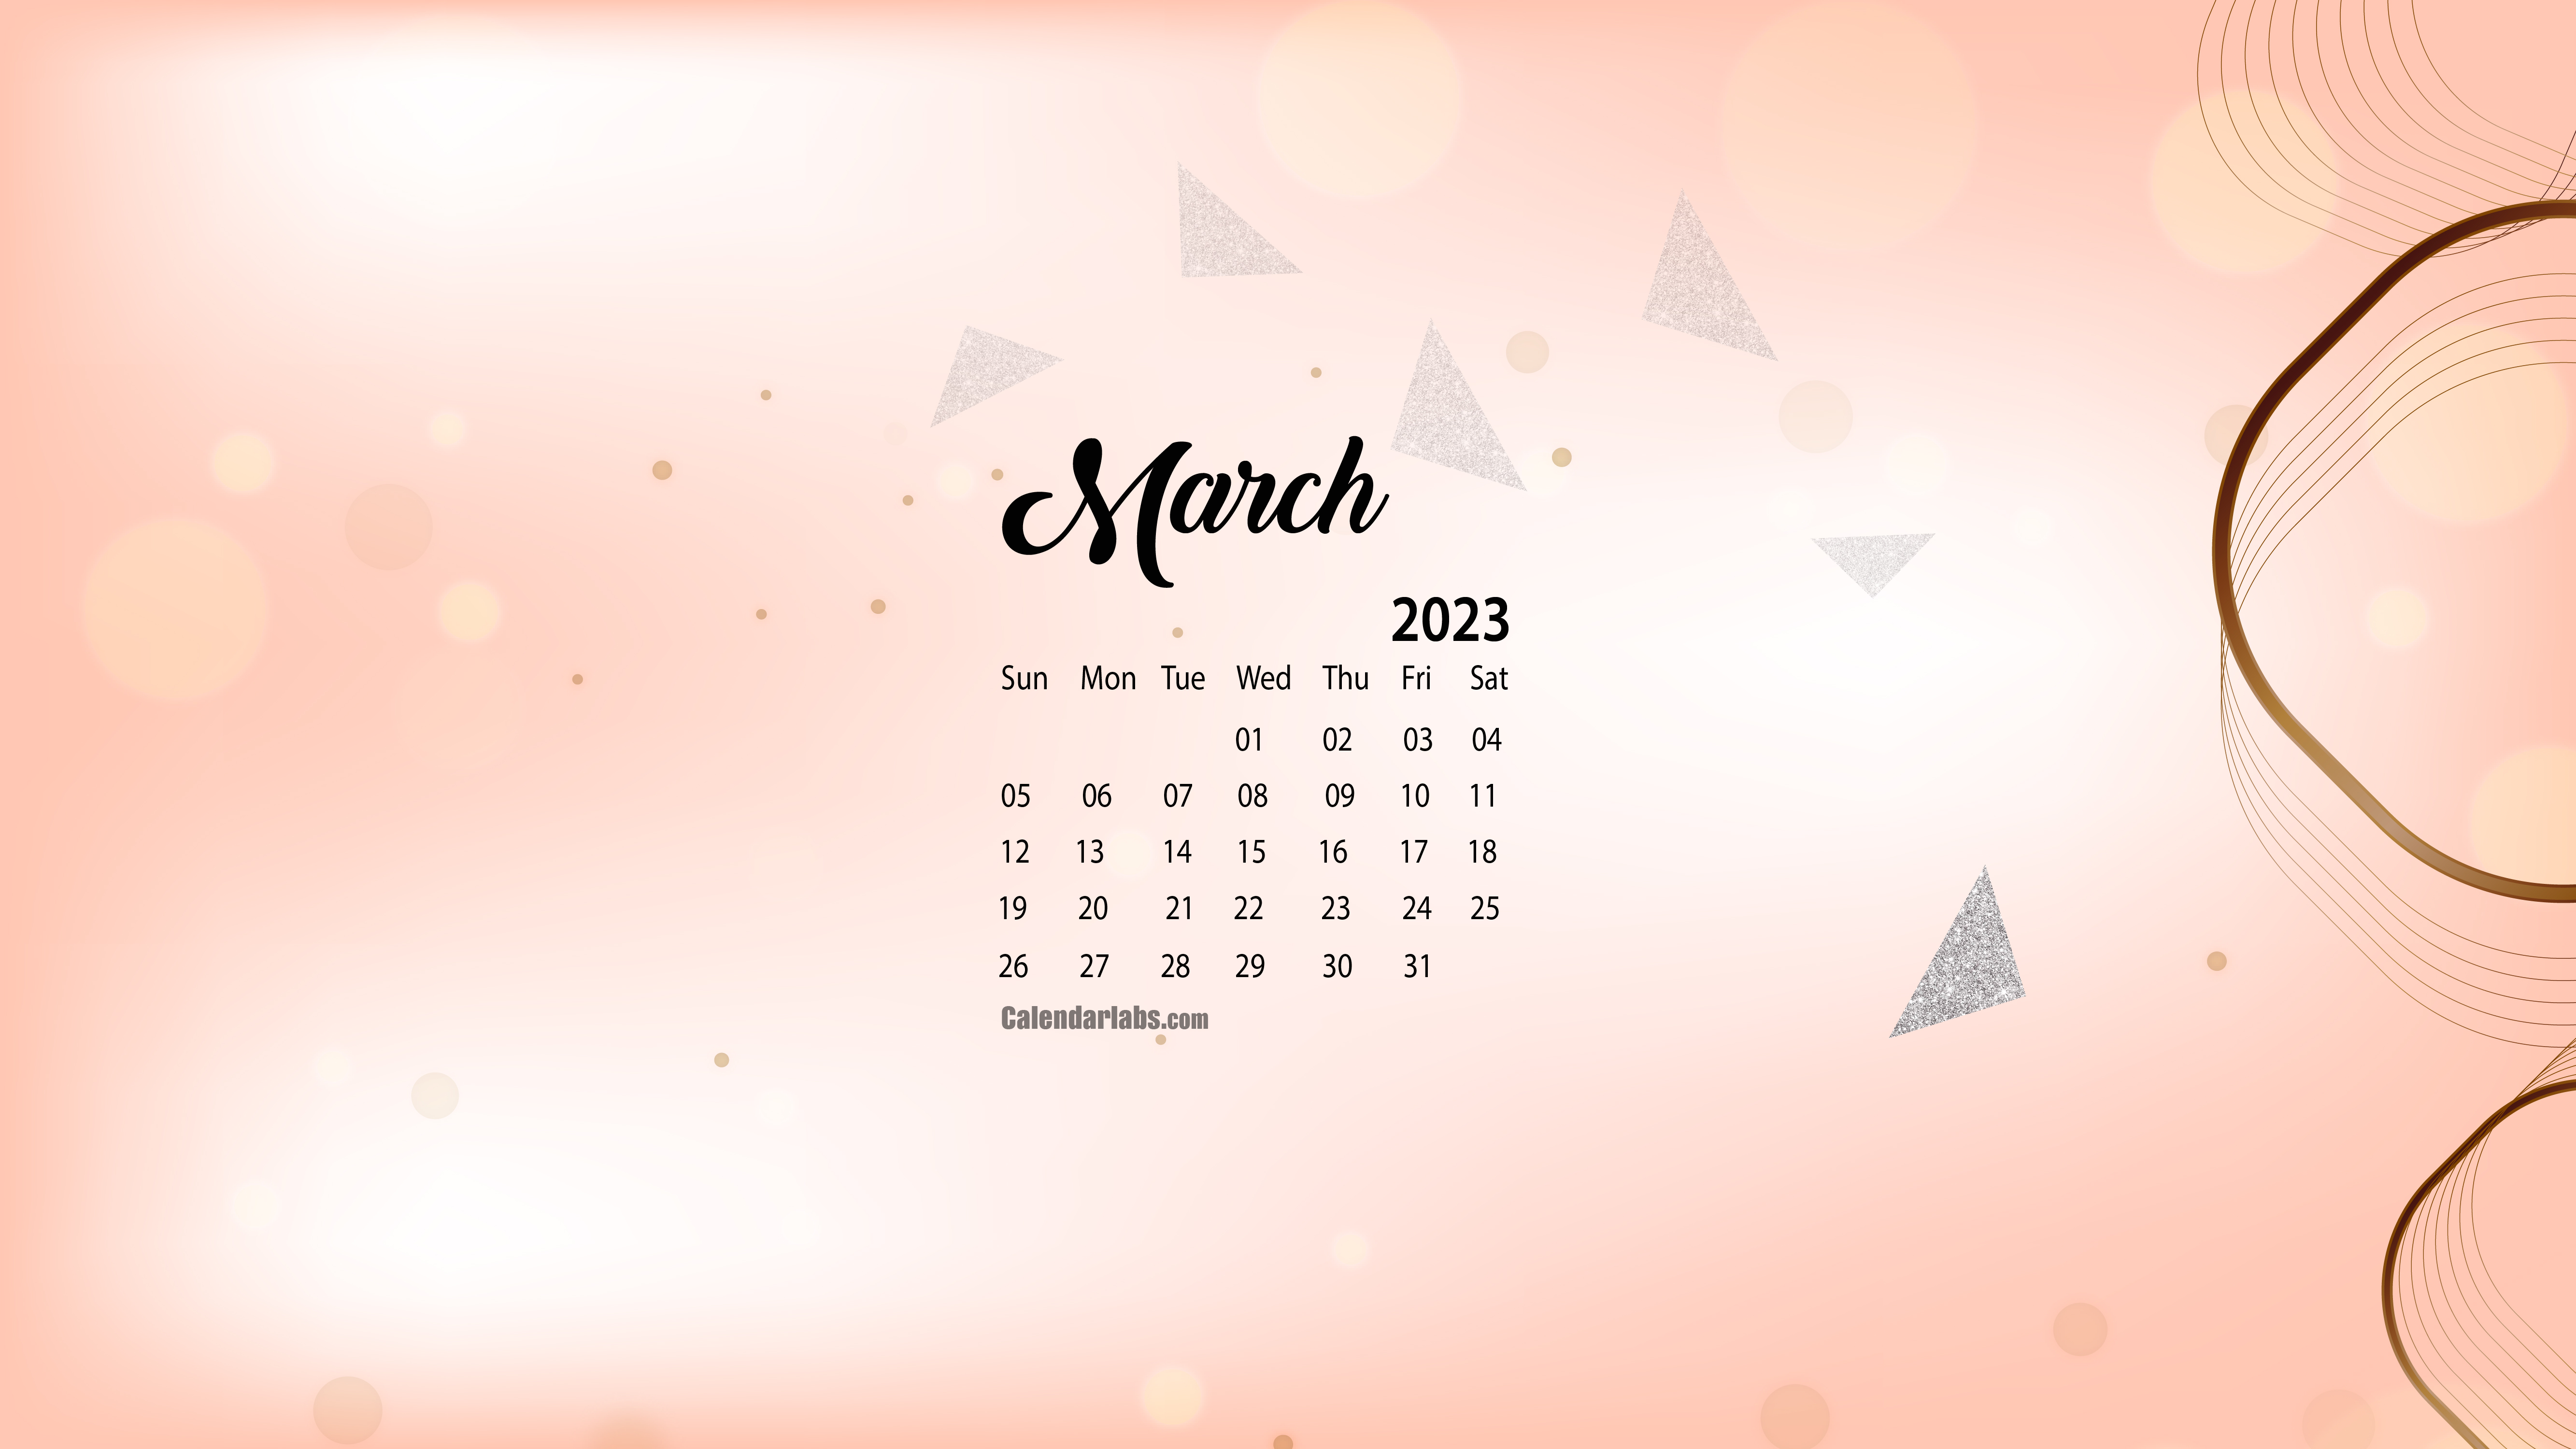 March 2023 Desktop Wallpaper Calendar - CalendarLabs